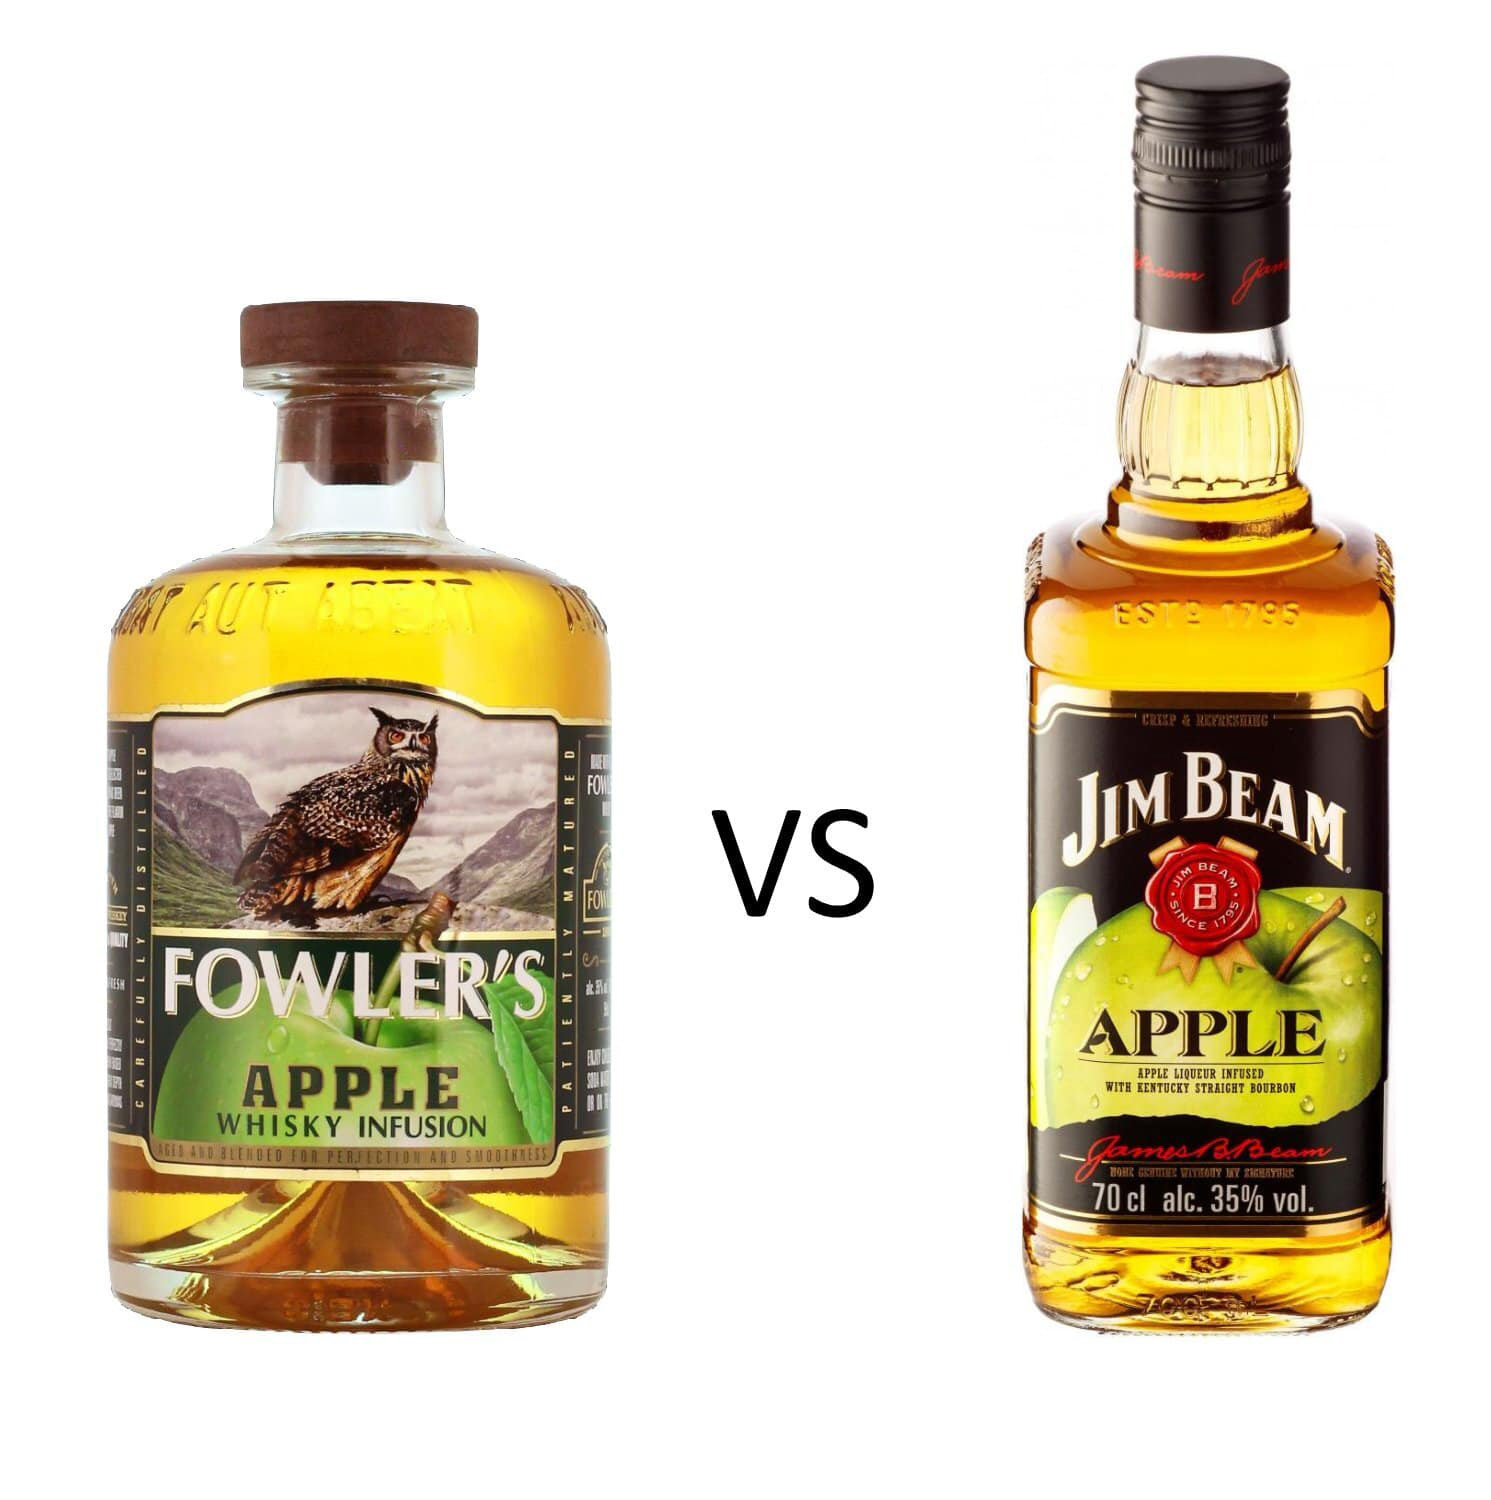 Fowler's Apple VS Jim Beam